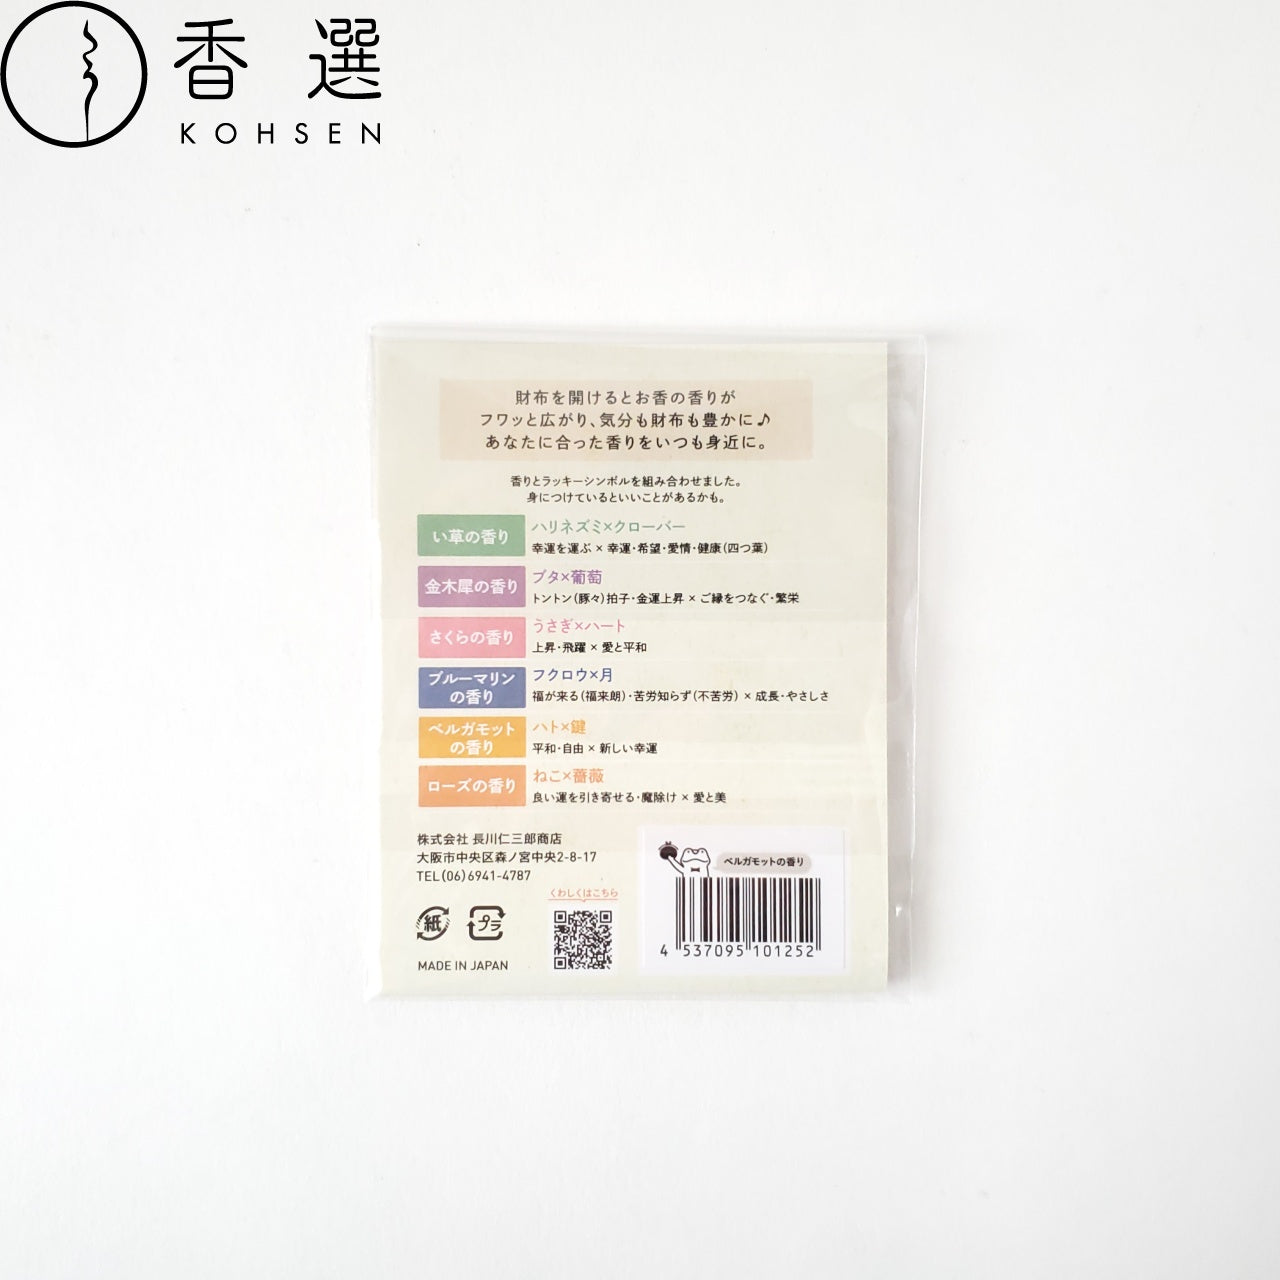 長川仁三郎商店 財布にincense ベルガモットの香り 香り袋